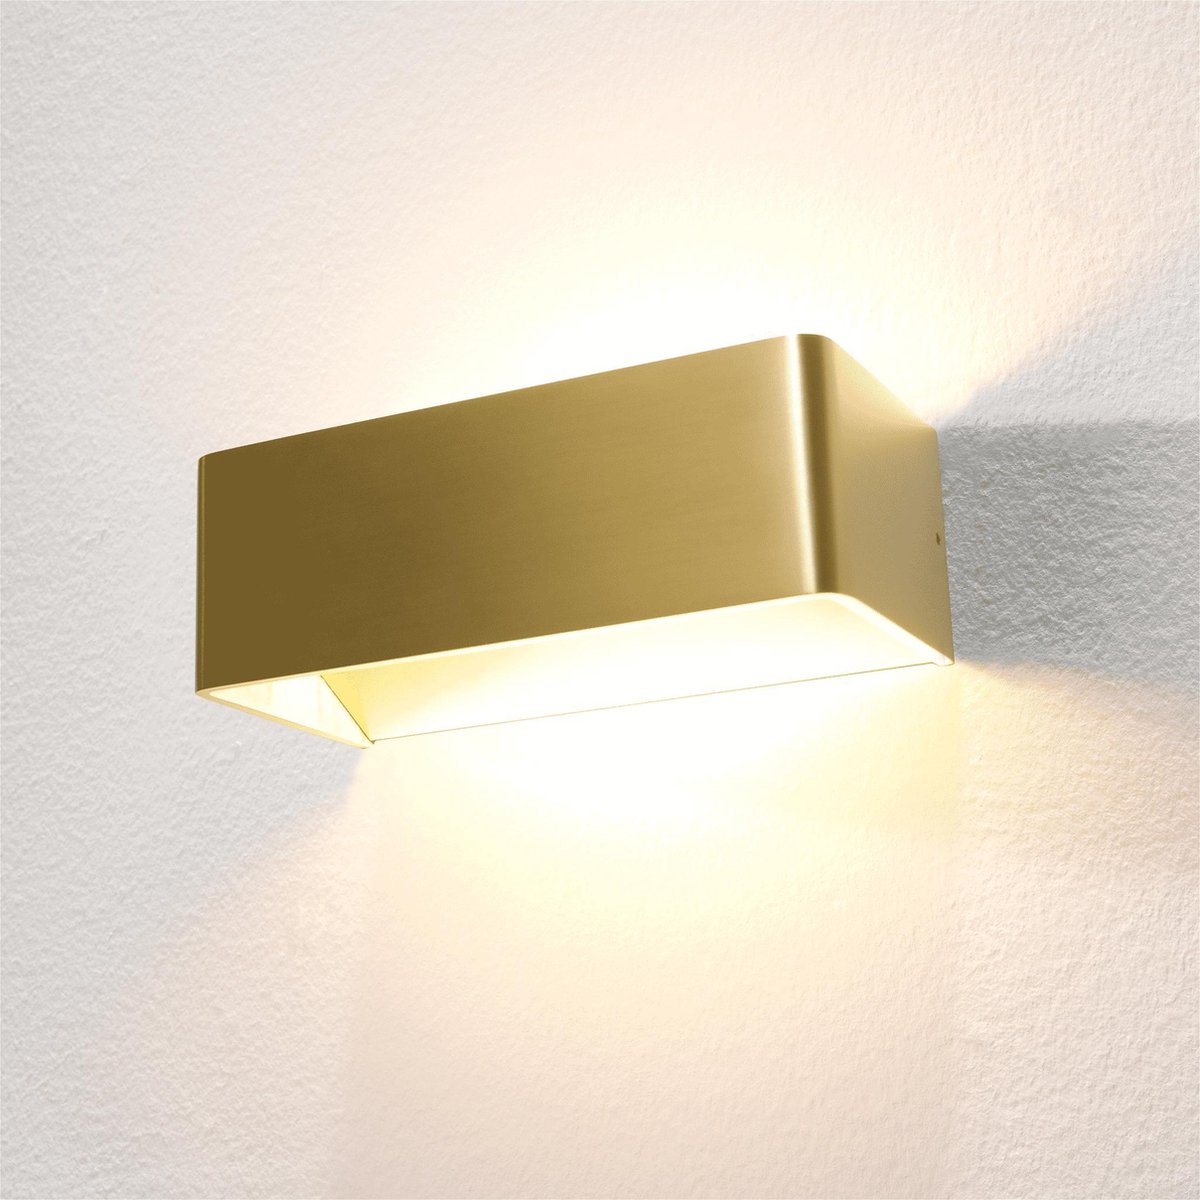 Mainz Wandlamp LED goud 2700K 590lm dimbaar - Modern - Artdelight - 2 jaar garantie